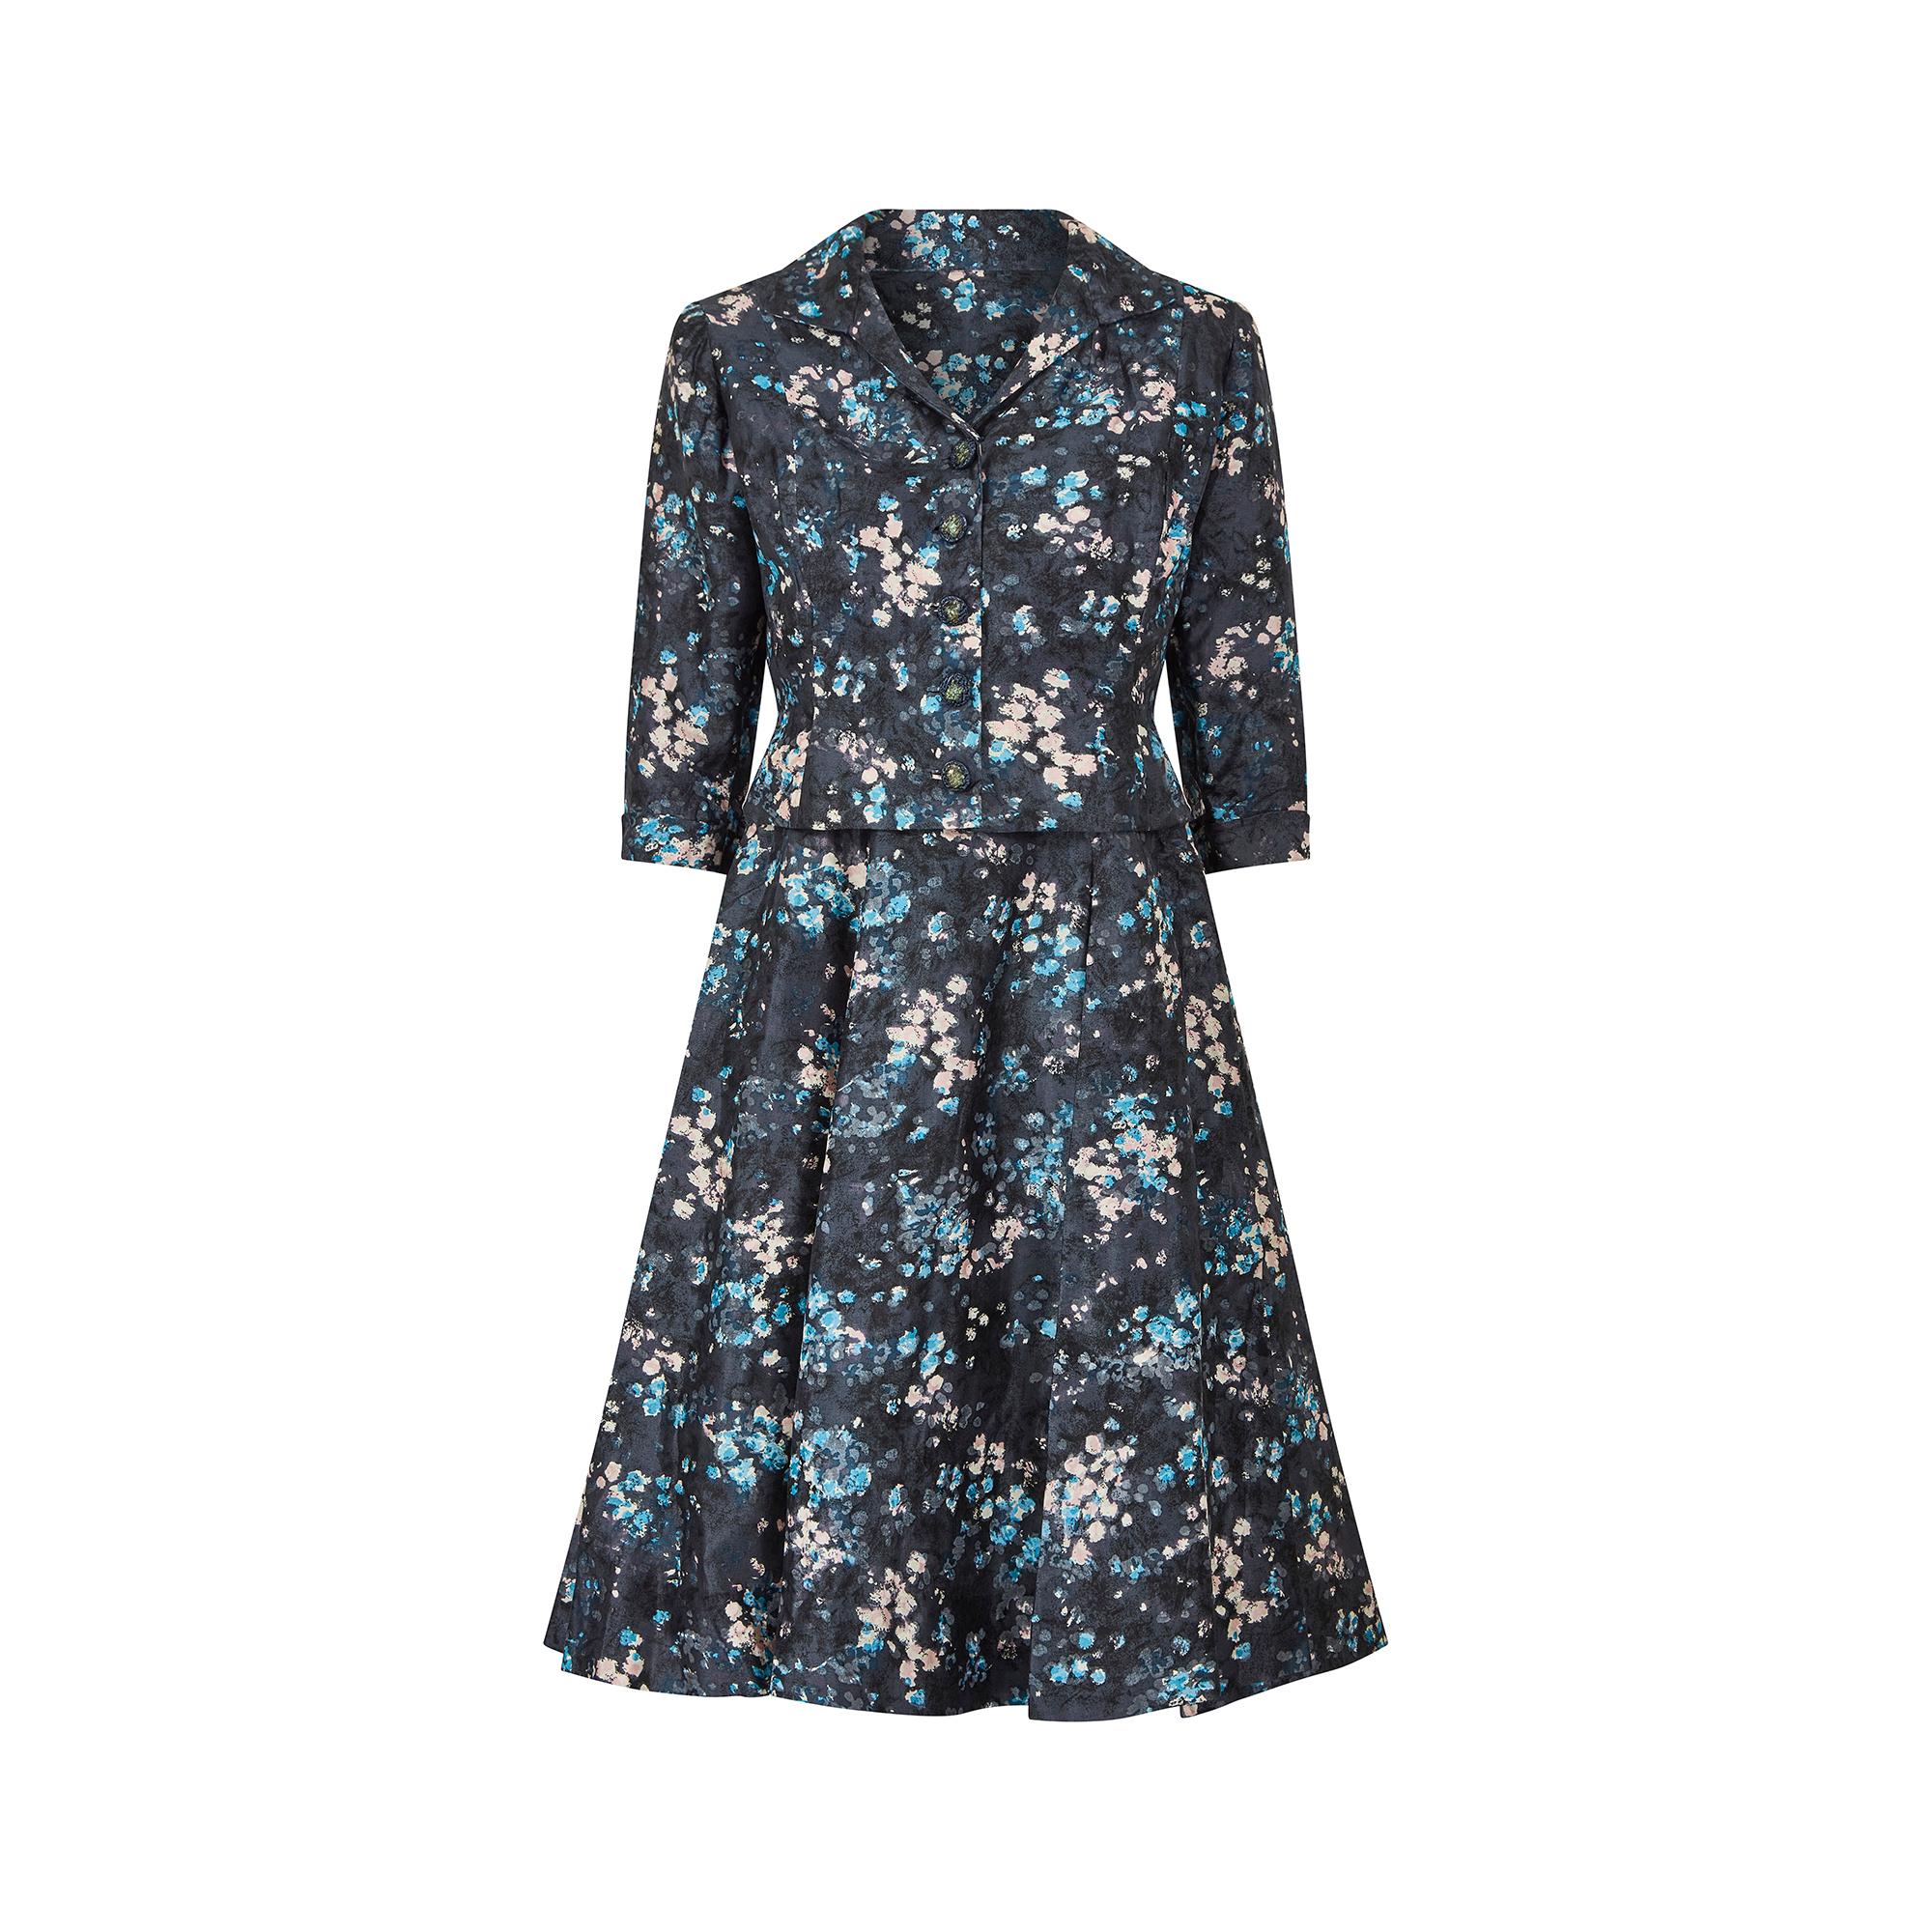 Cet ensemble de robes Suzanne Pardo de la Couture française des années 1950 est fait d'une belle soie irisée dans un joli imprimé floral. La robe a une silhouette classique des années 50, avec un corsage plus ajusté et une jupe évasée. L'encolure